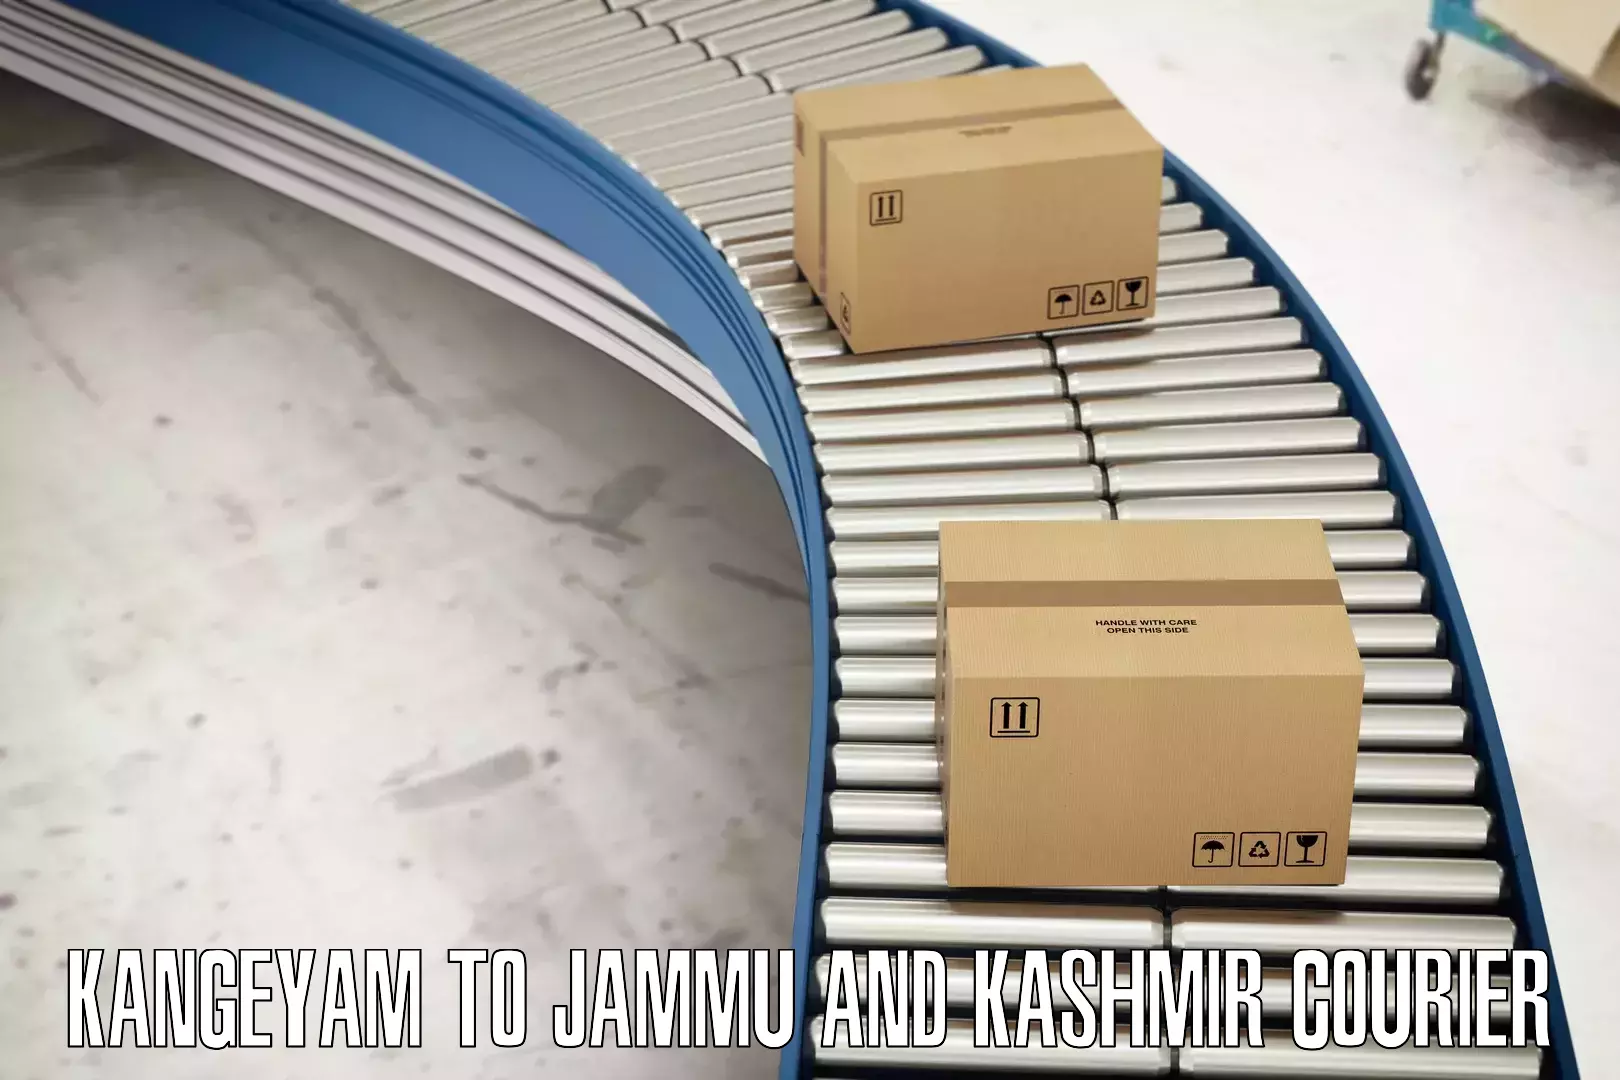 Package tracking Kangeyam to Jammu and Kashmir